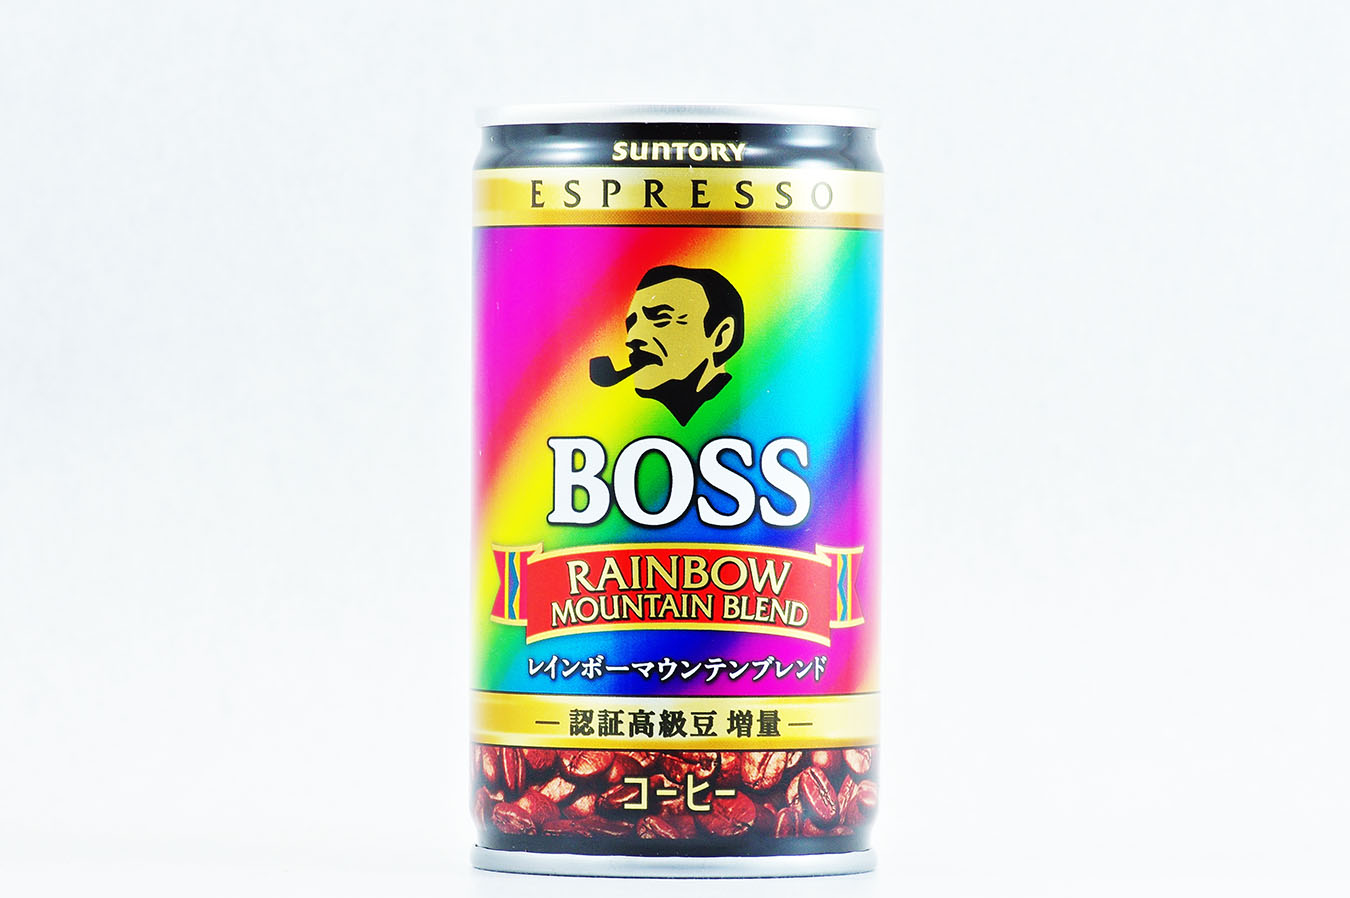 BOSSレインボーマウンテンブレンド 165g缶 2015年11月